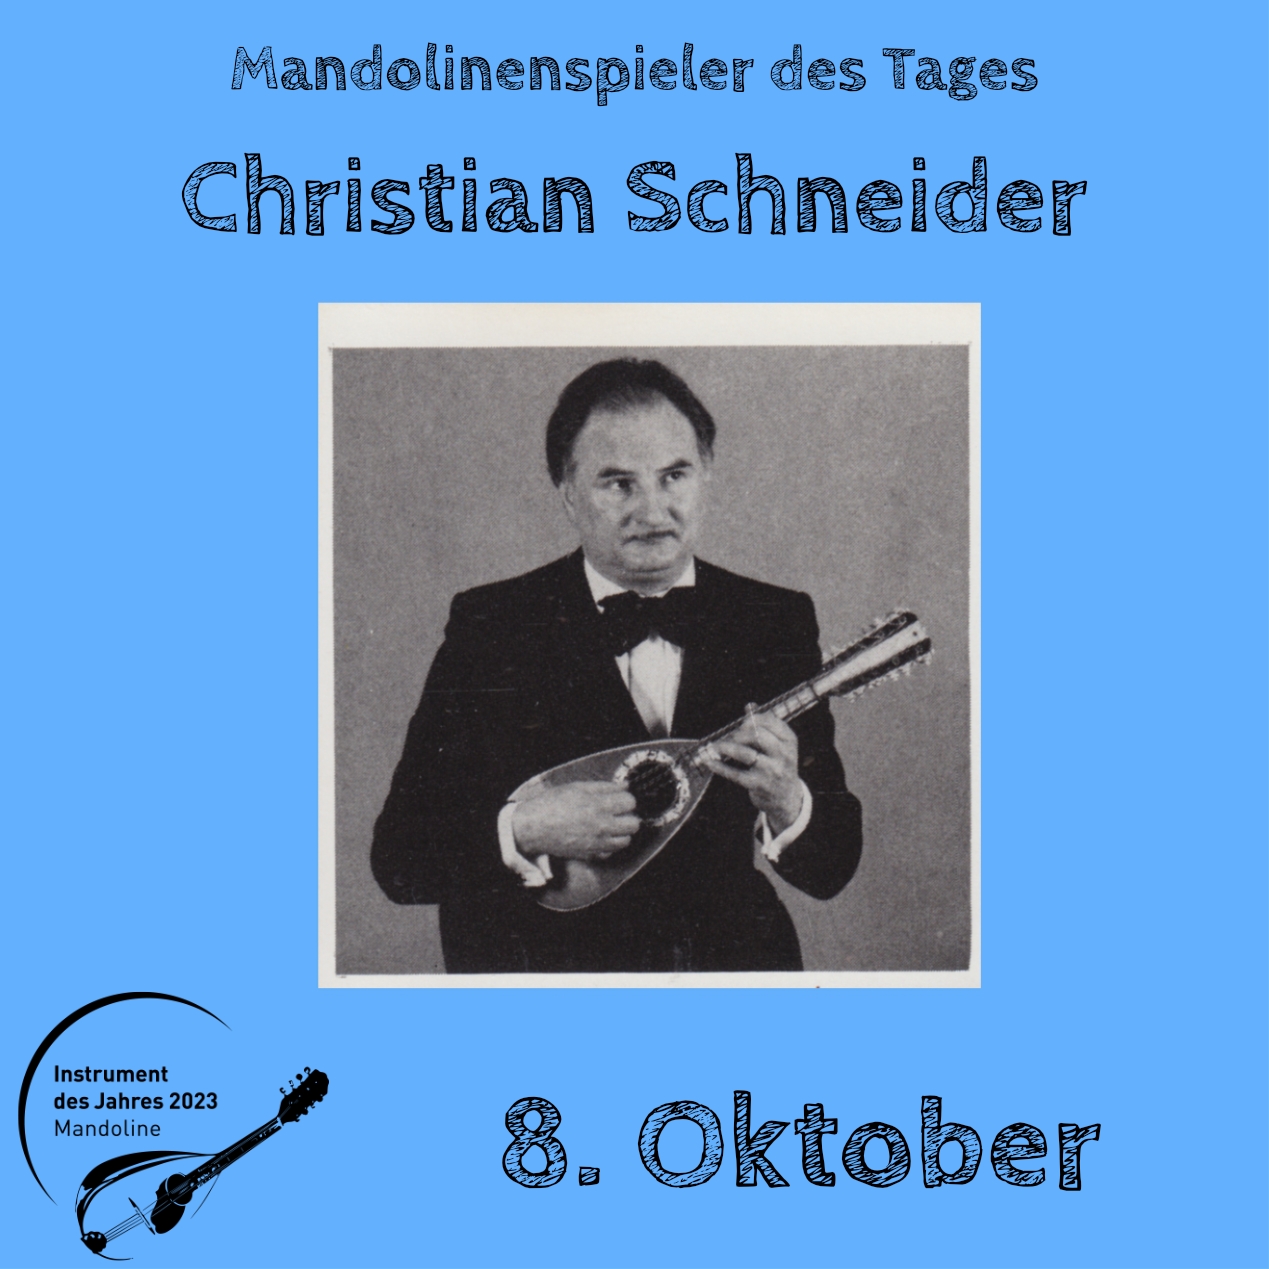 8. Oktober - Christian Schneider Instrument des Jahres 2023 Mandolinenspieler Mandolinenspielerin des Tages